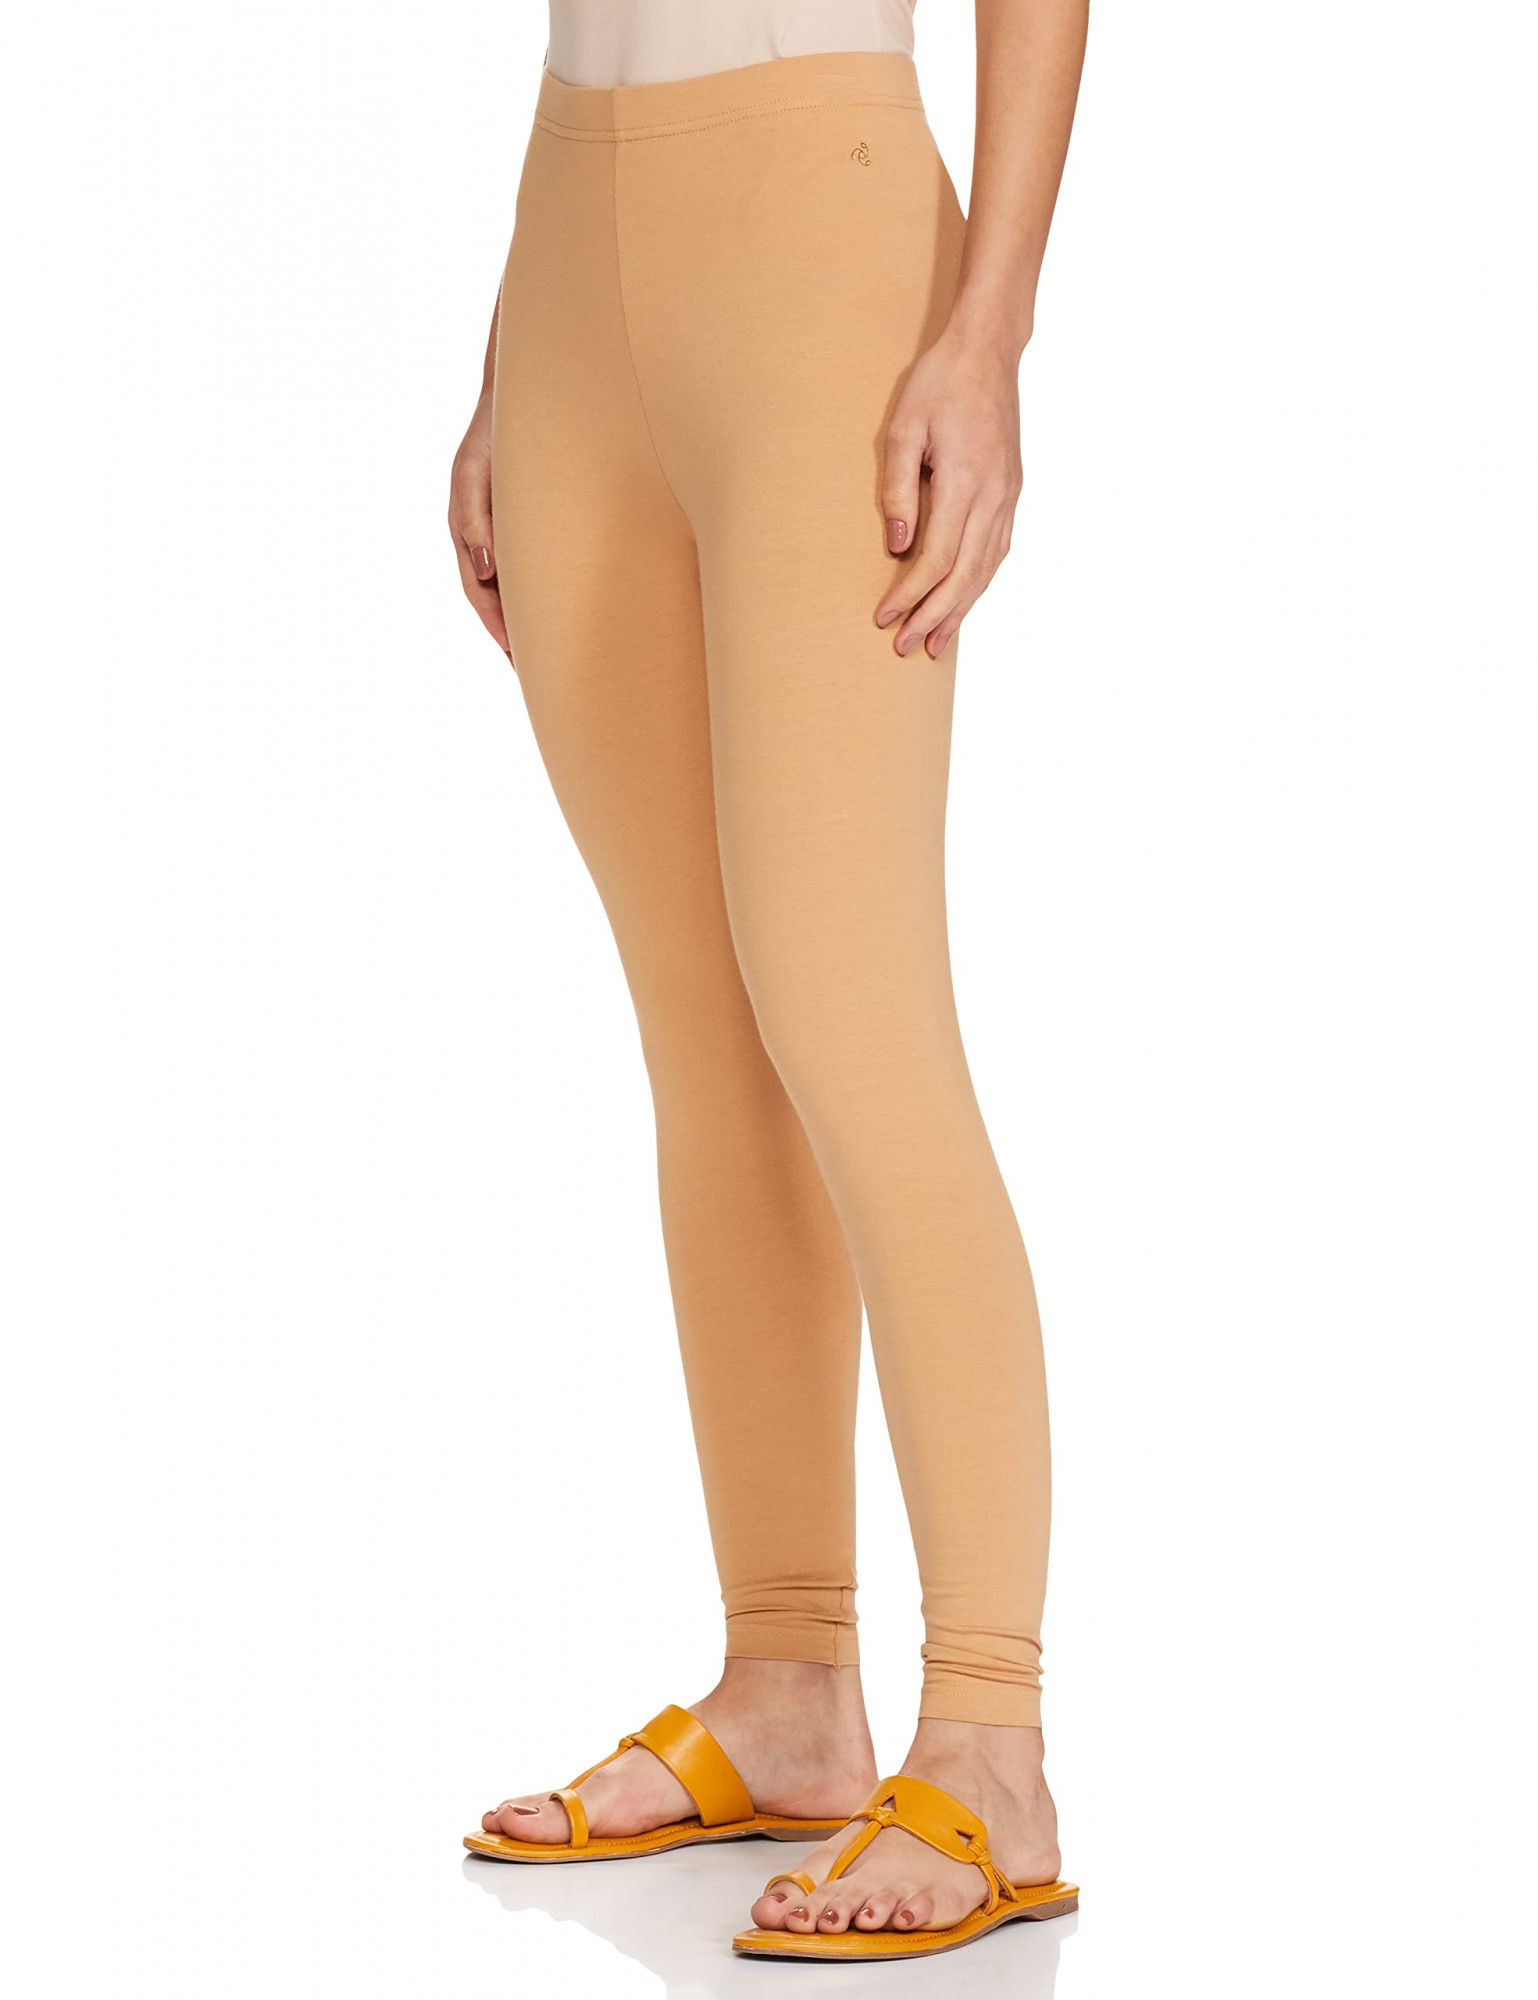 Jockey Women's Slim Fit Cotton Blend Leggings (AW87_Tan_XL_Brown, Tan_XL)